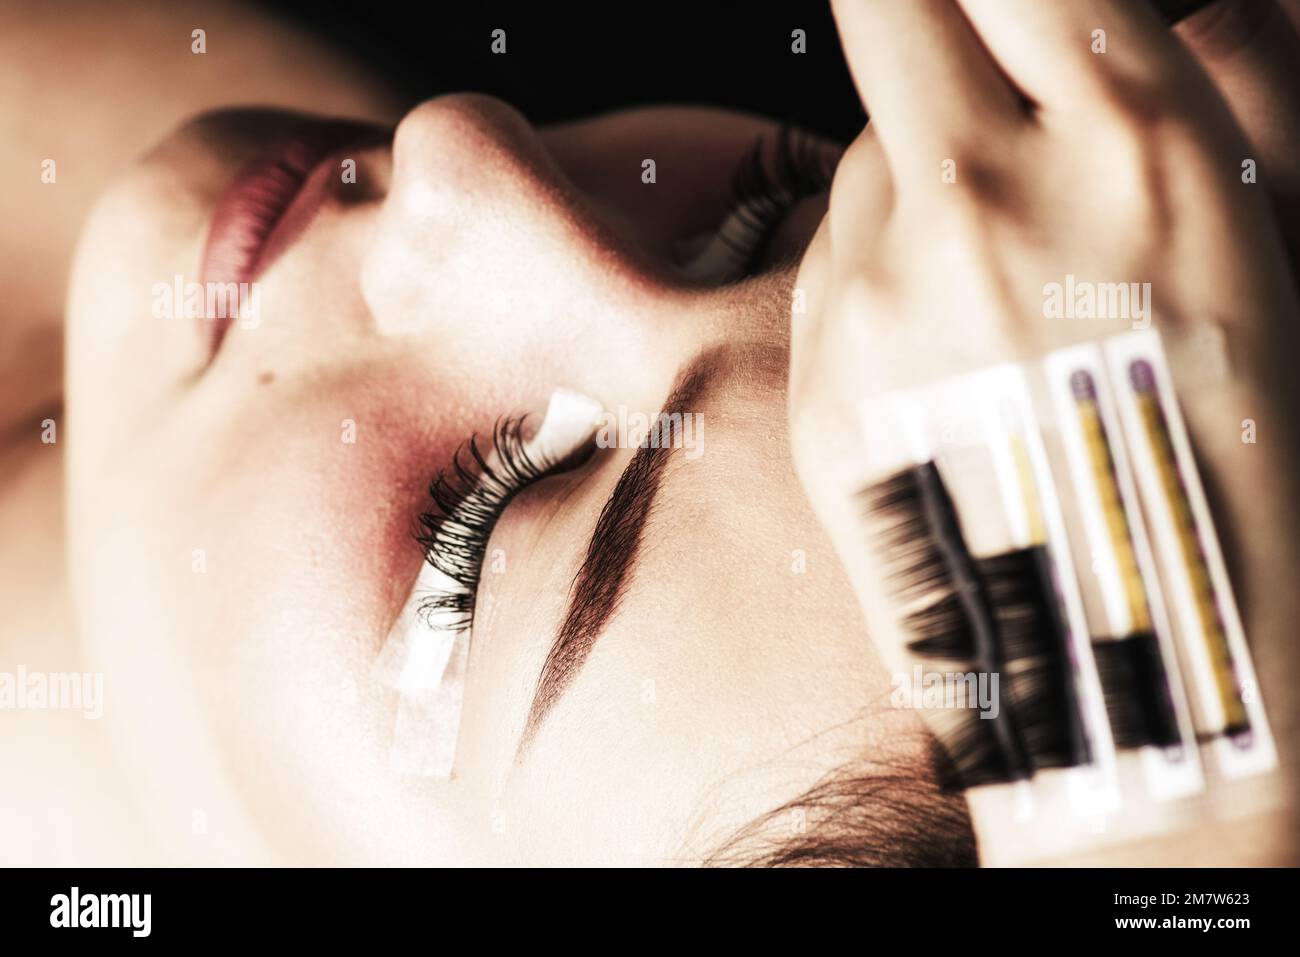 Eyelash Extension Procedure. Woman Eye with Long Eyelashes. Lashes, close up. Stock Photo